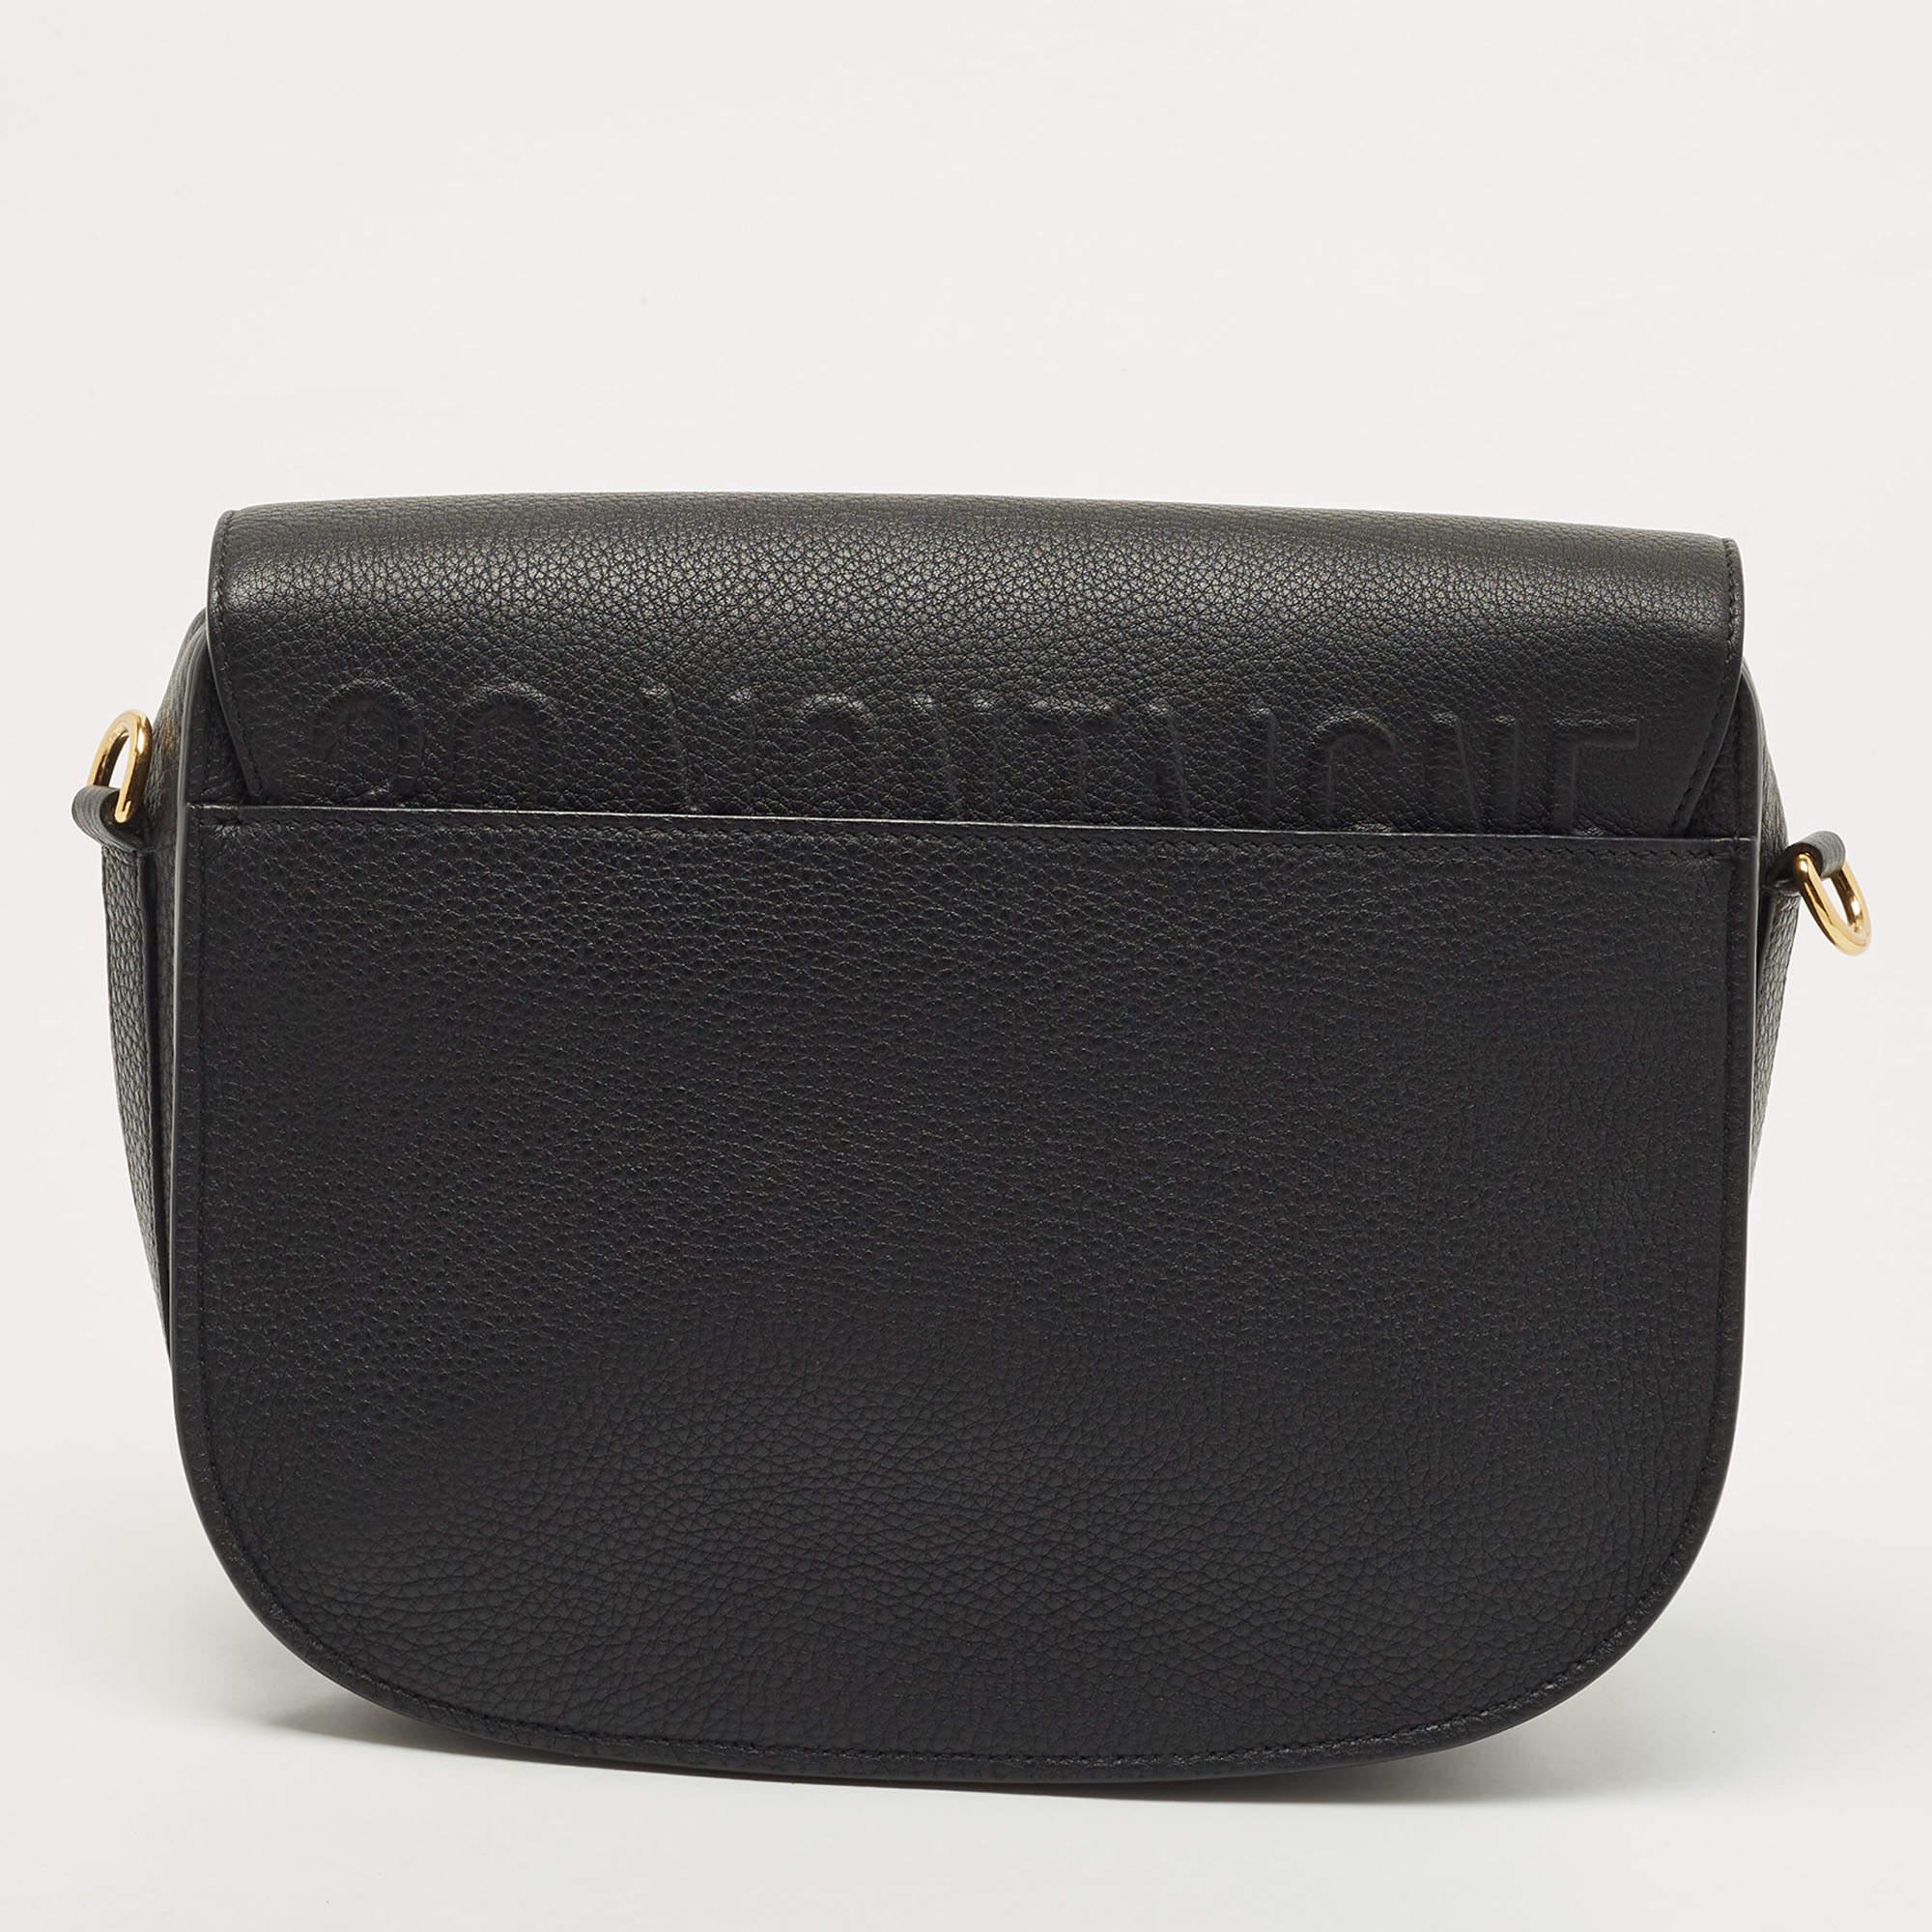 Le sac Bobby de Dior est un accessoire luxueux et polyvalent qui respire l'élégance. Fabriqué en cuir noir de haute qualité, il est doté d'un intérieur spacieux, d'un fermoir signature 